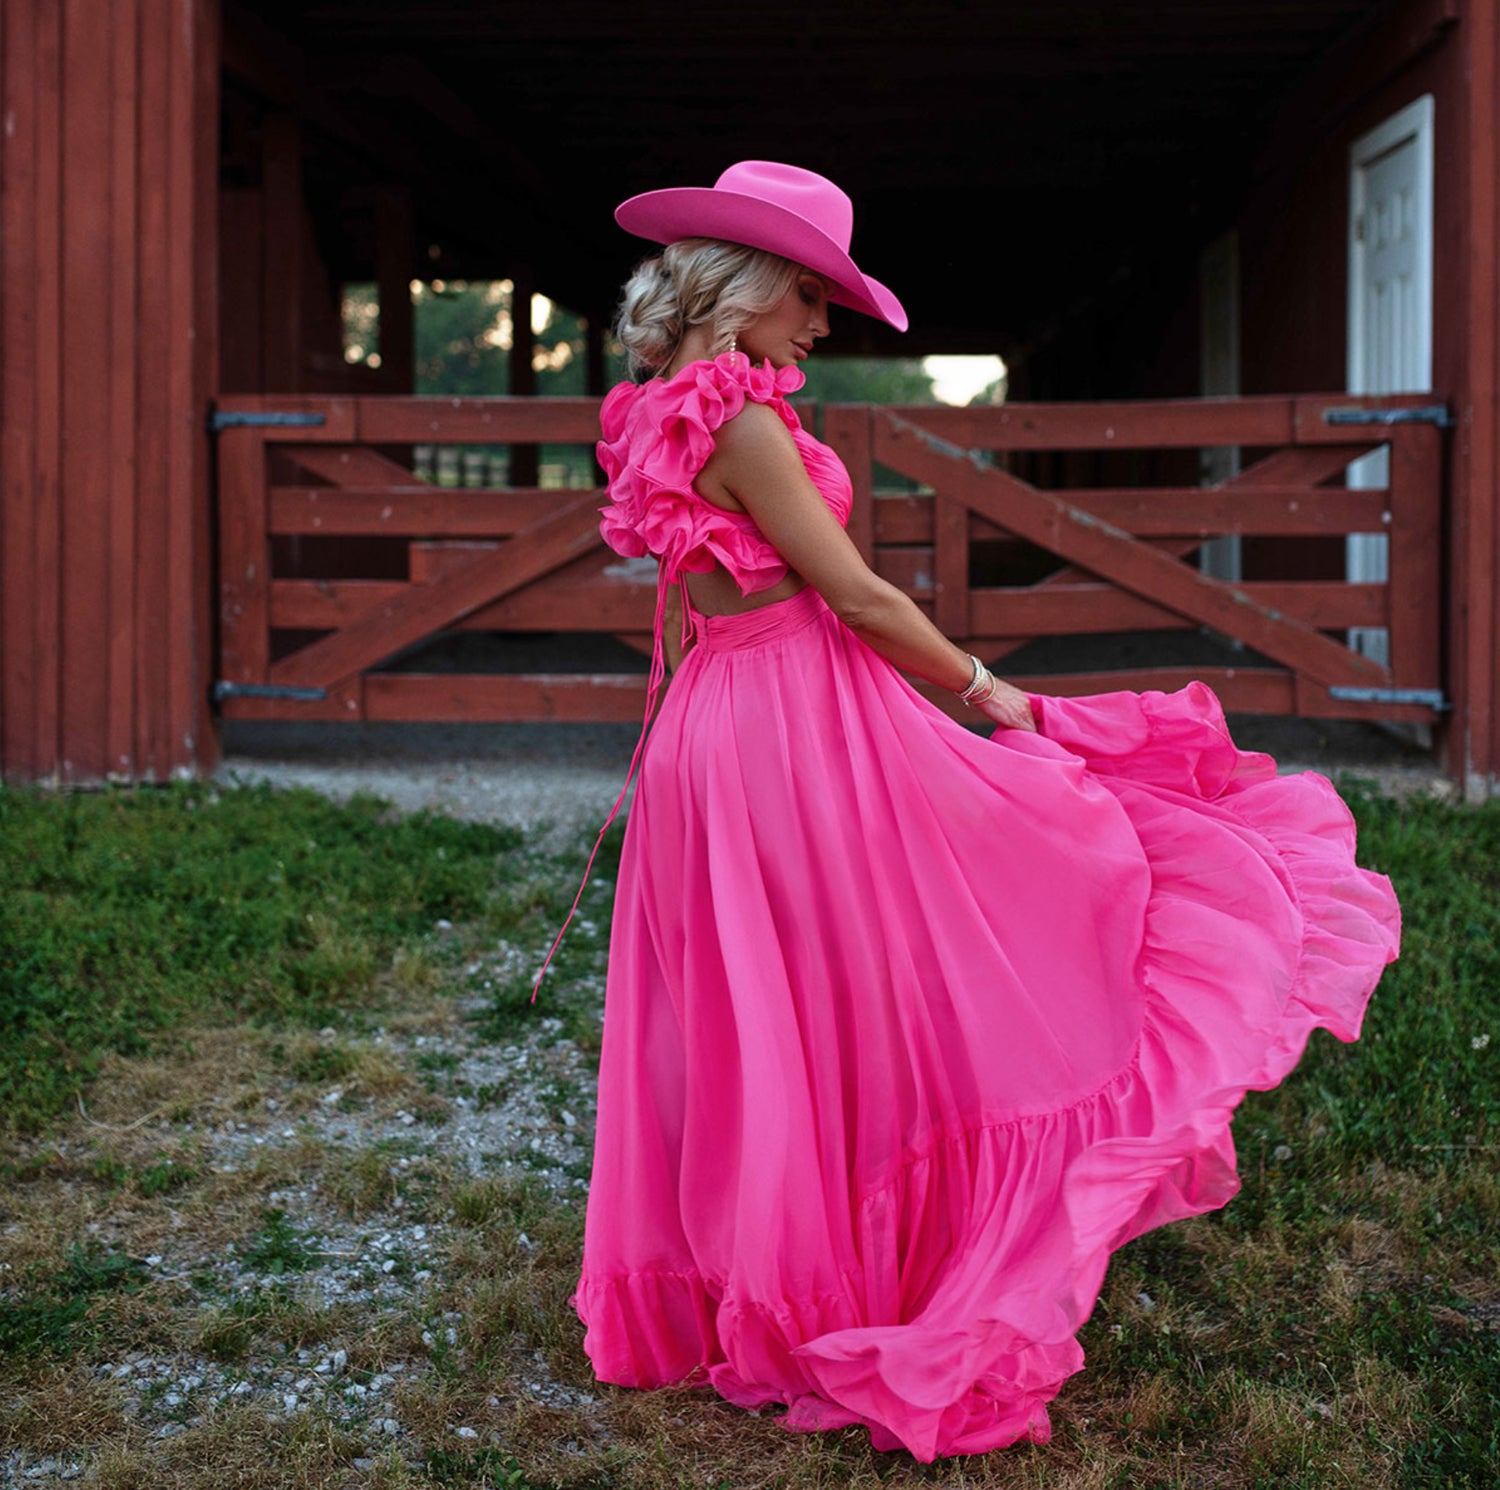 Bailey Punchy Cowboy Hat - Malibu Pink